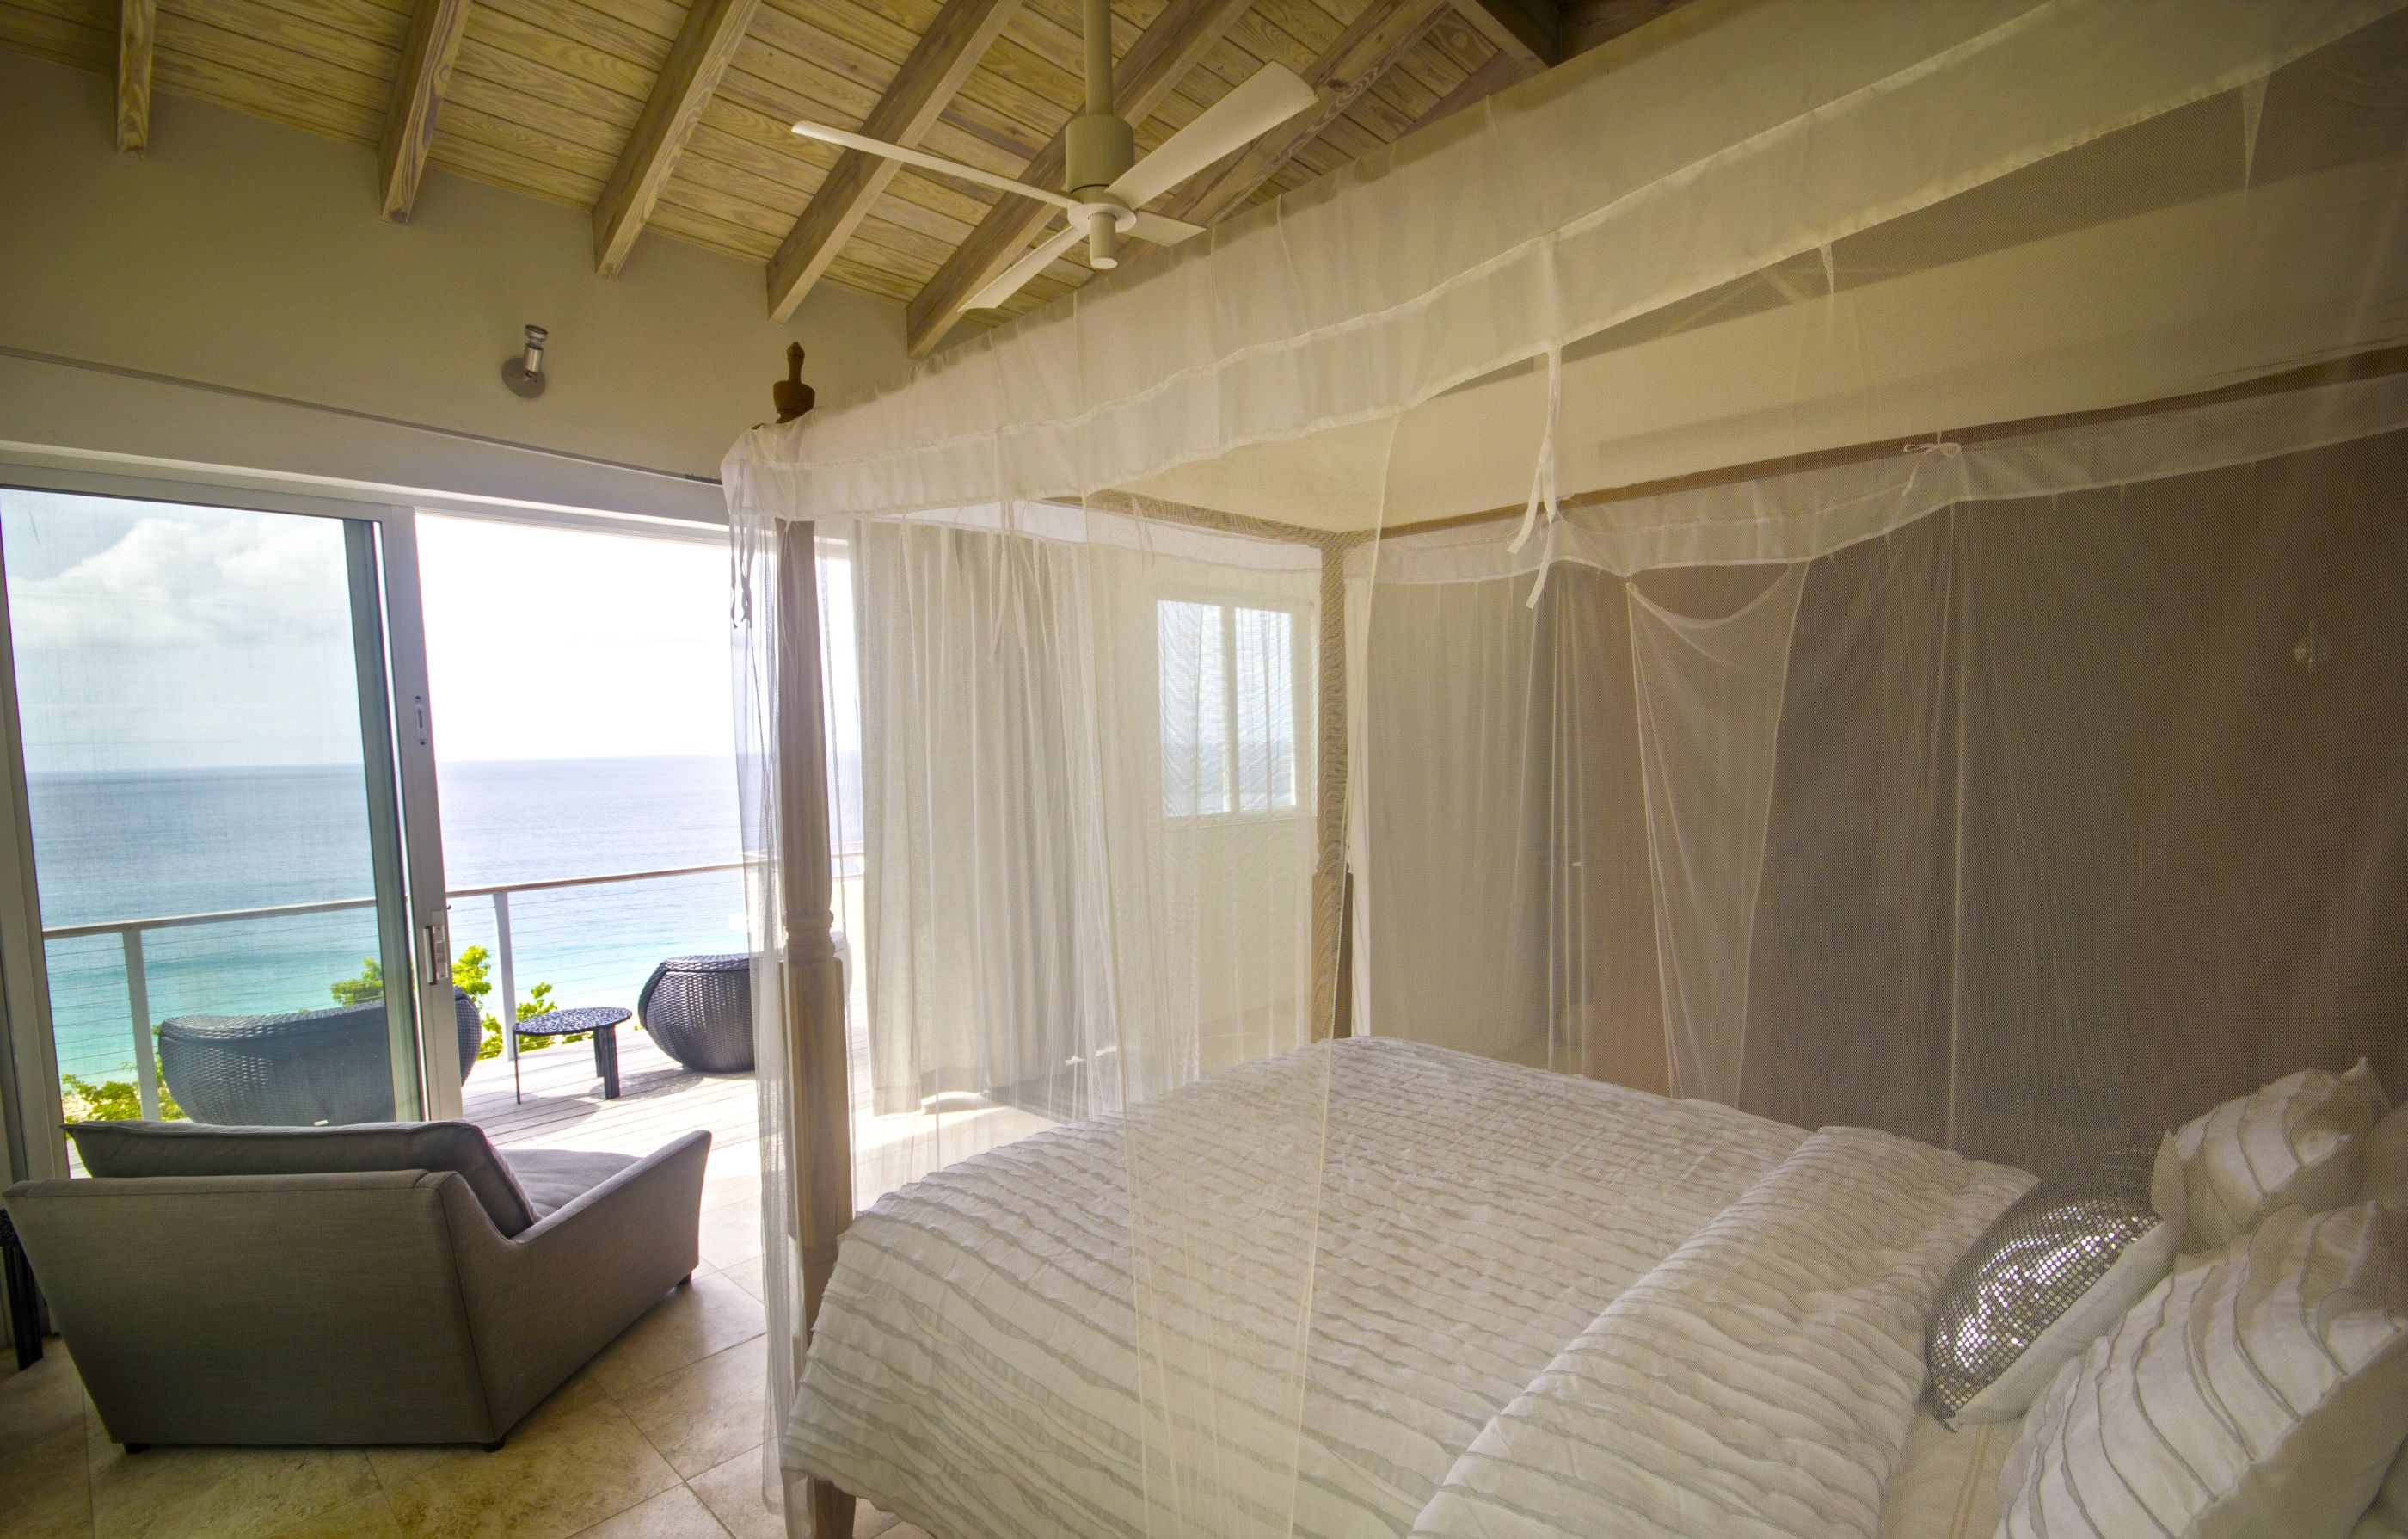 Double bedroom of Villa Lune, British Virgin Islands